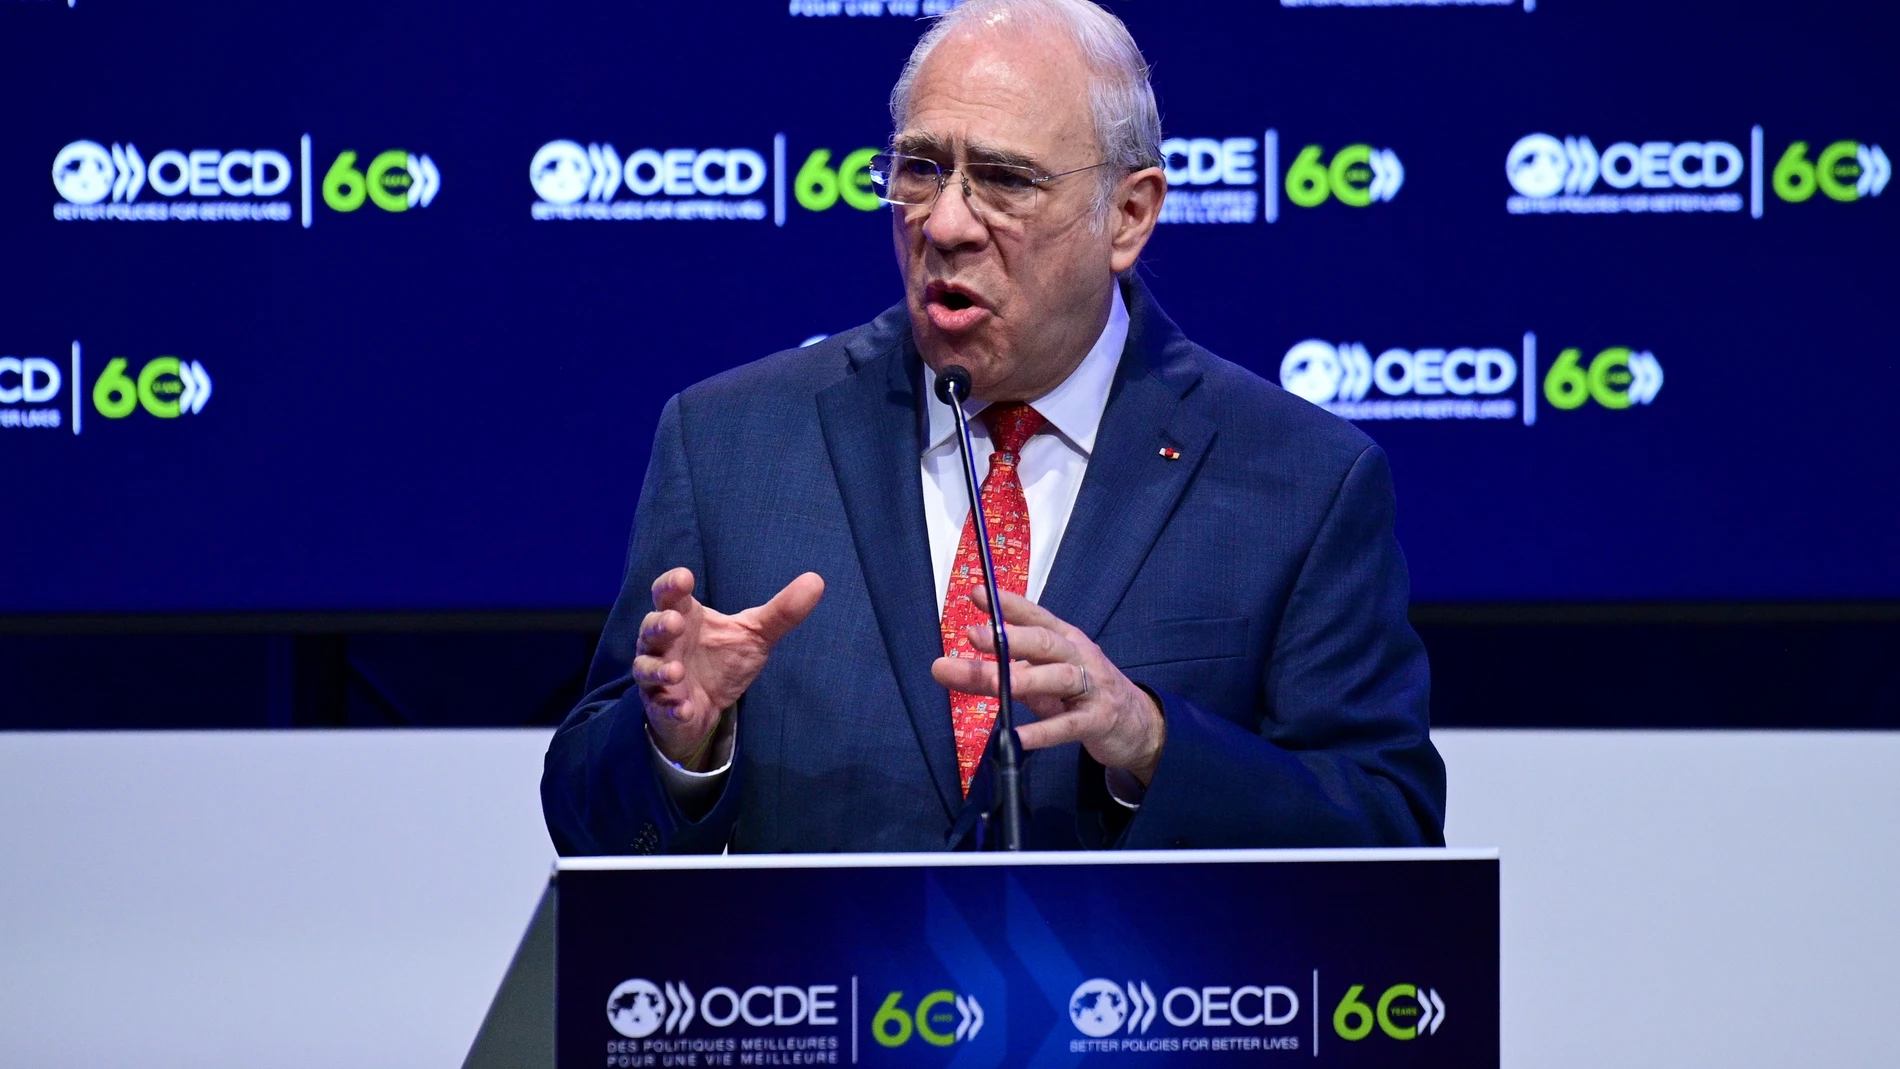 El secretario general de la OCDE, Ángel Gurria, durante el 60 aniversario de la entidad